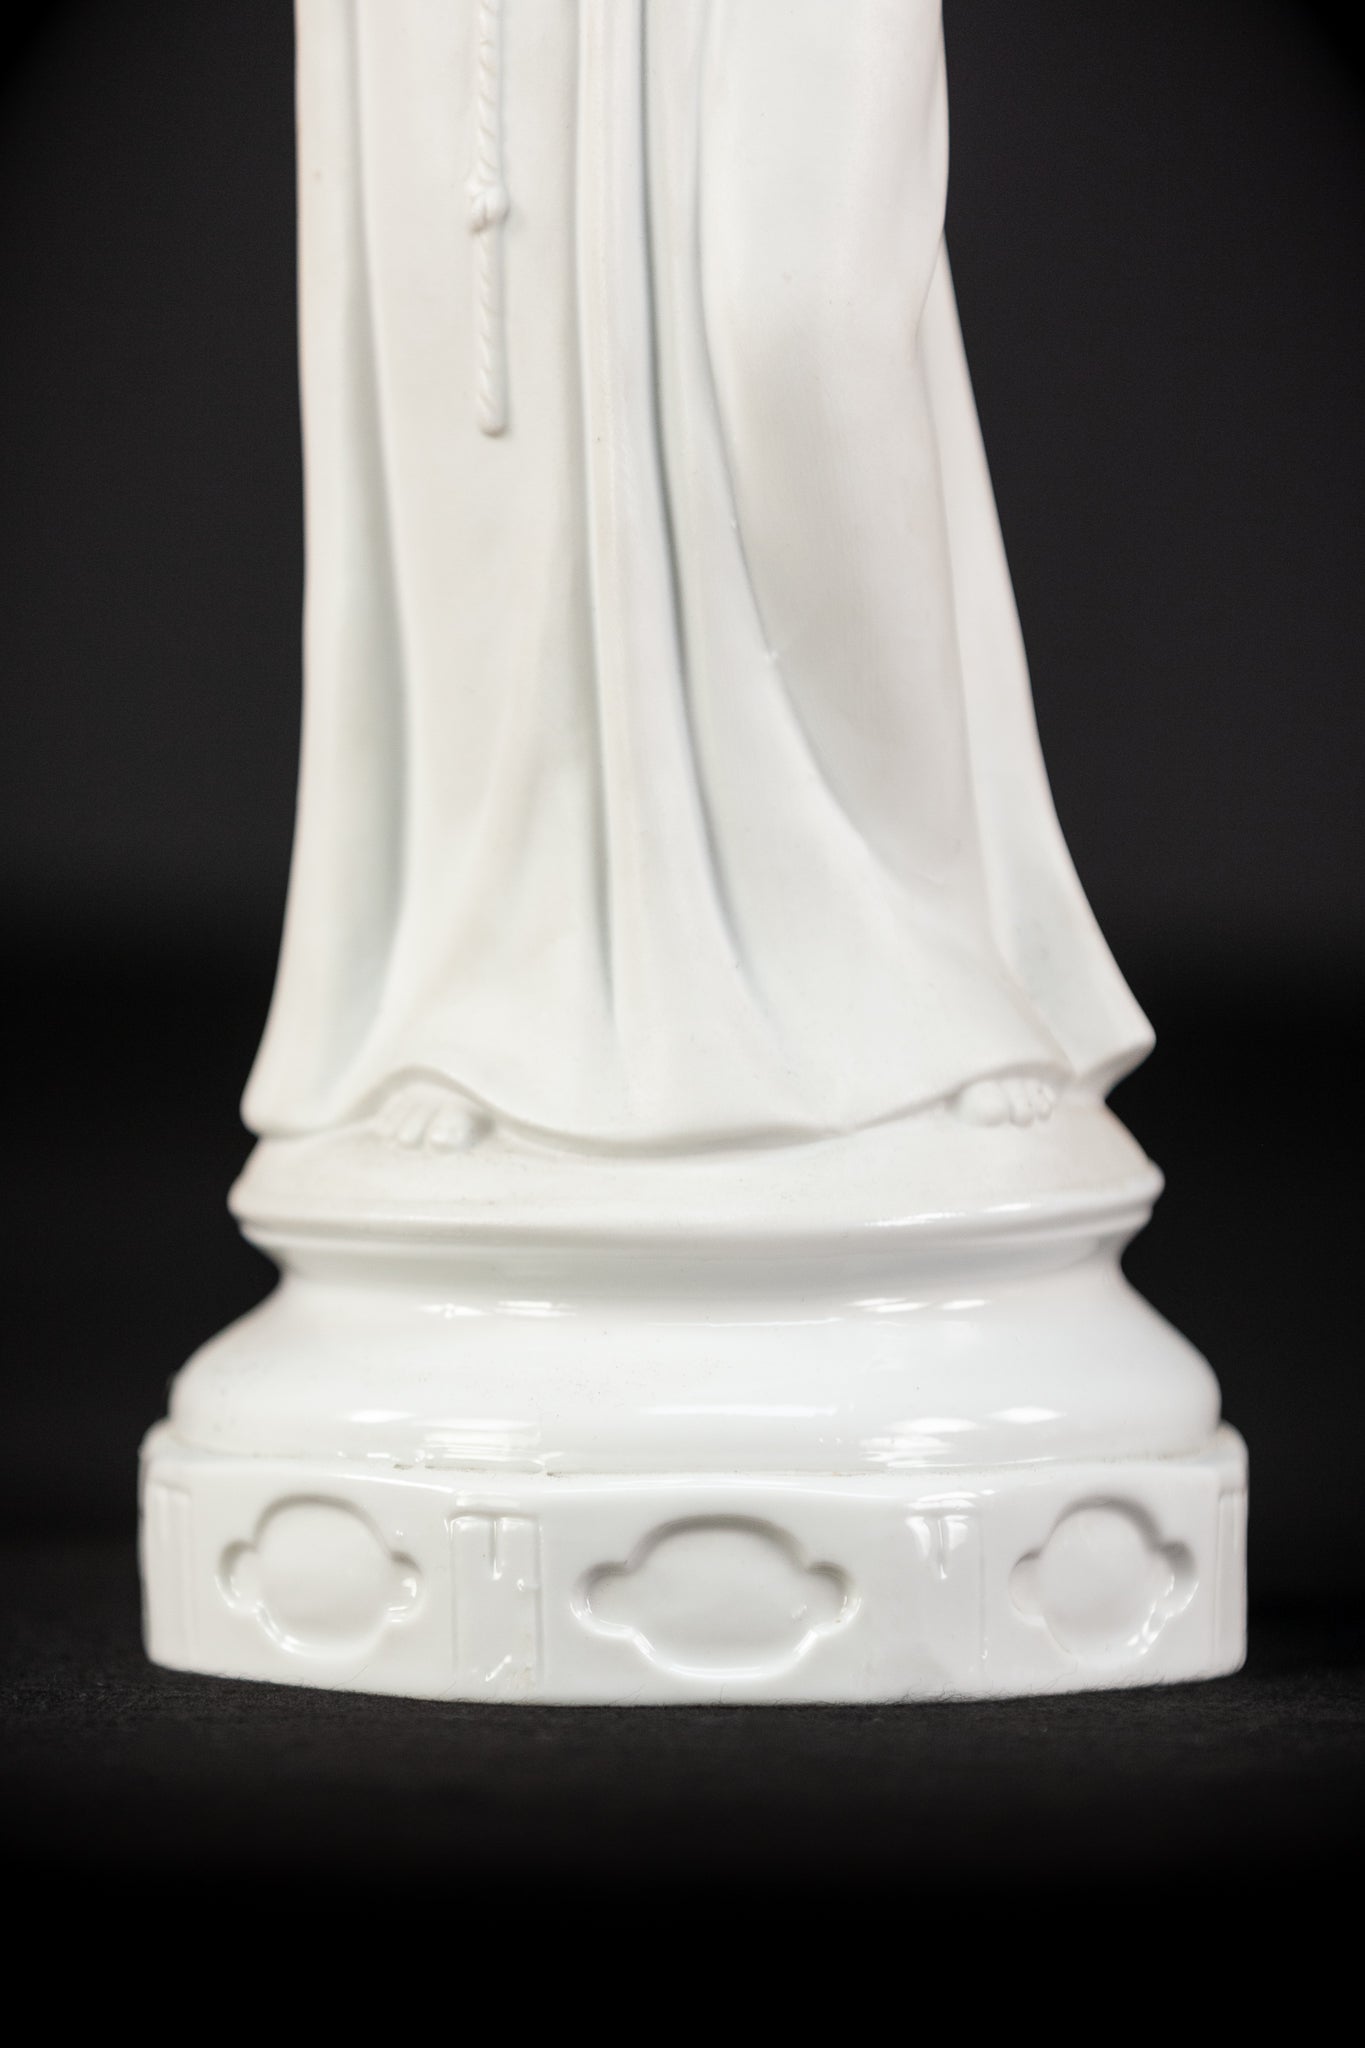 St Anthony Statue | Antique Saint Porcelain | 14.4''